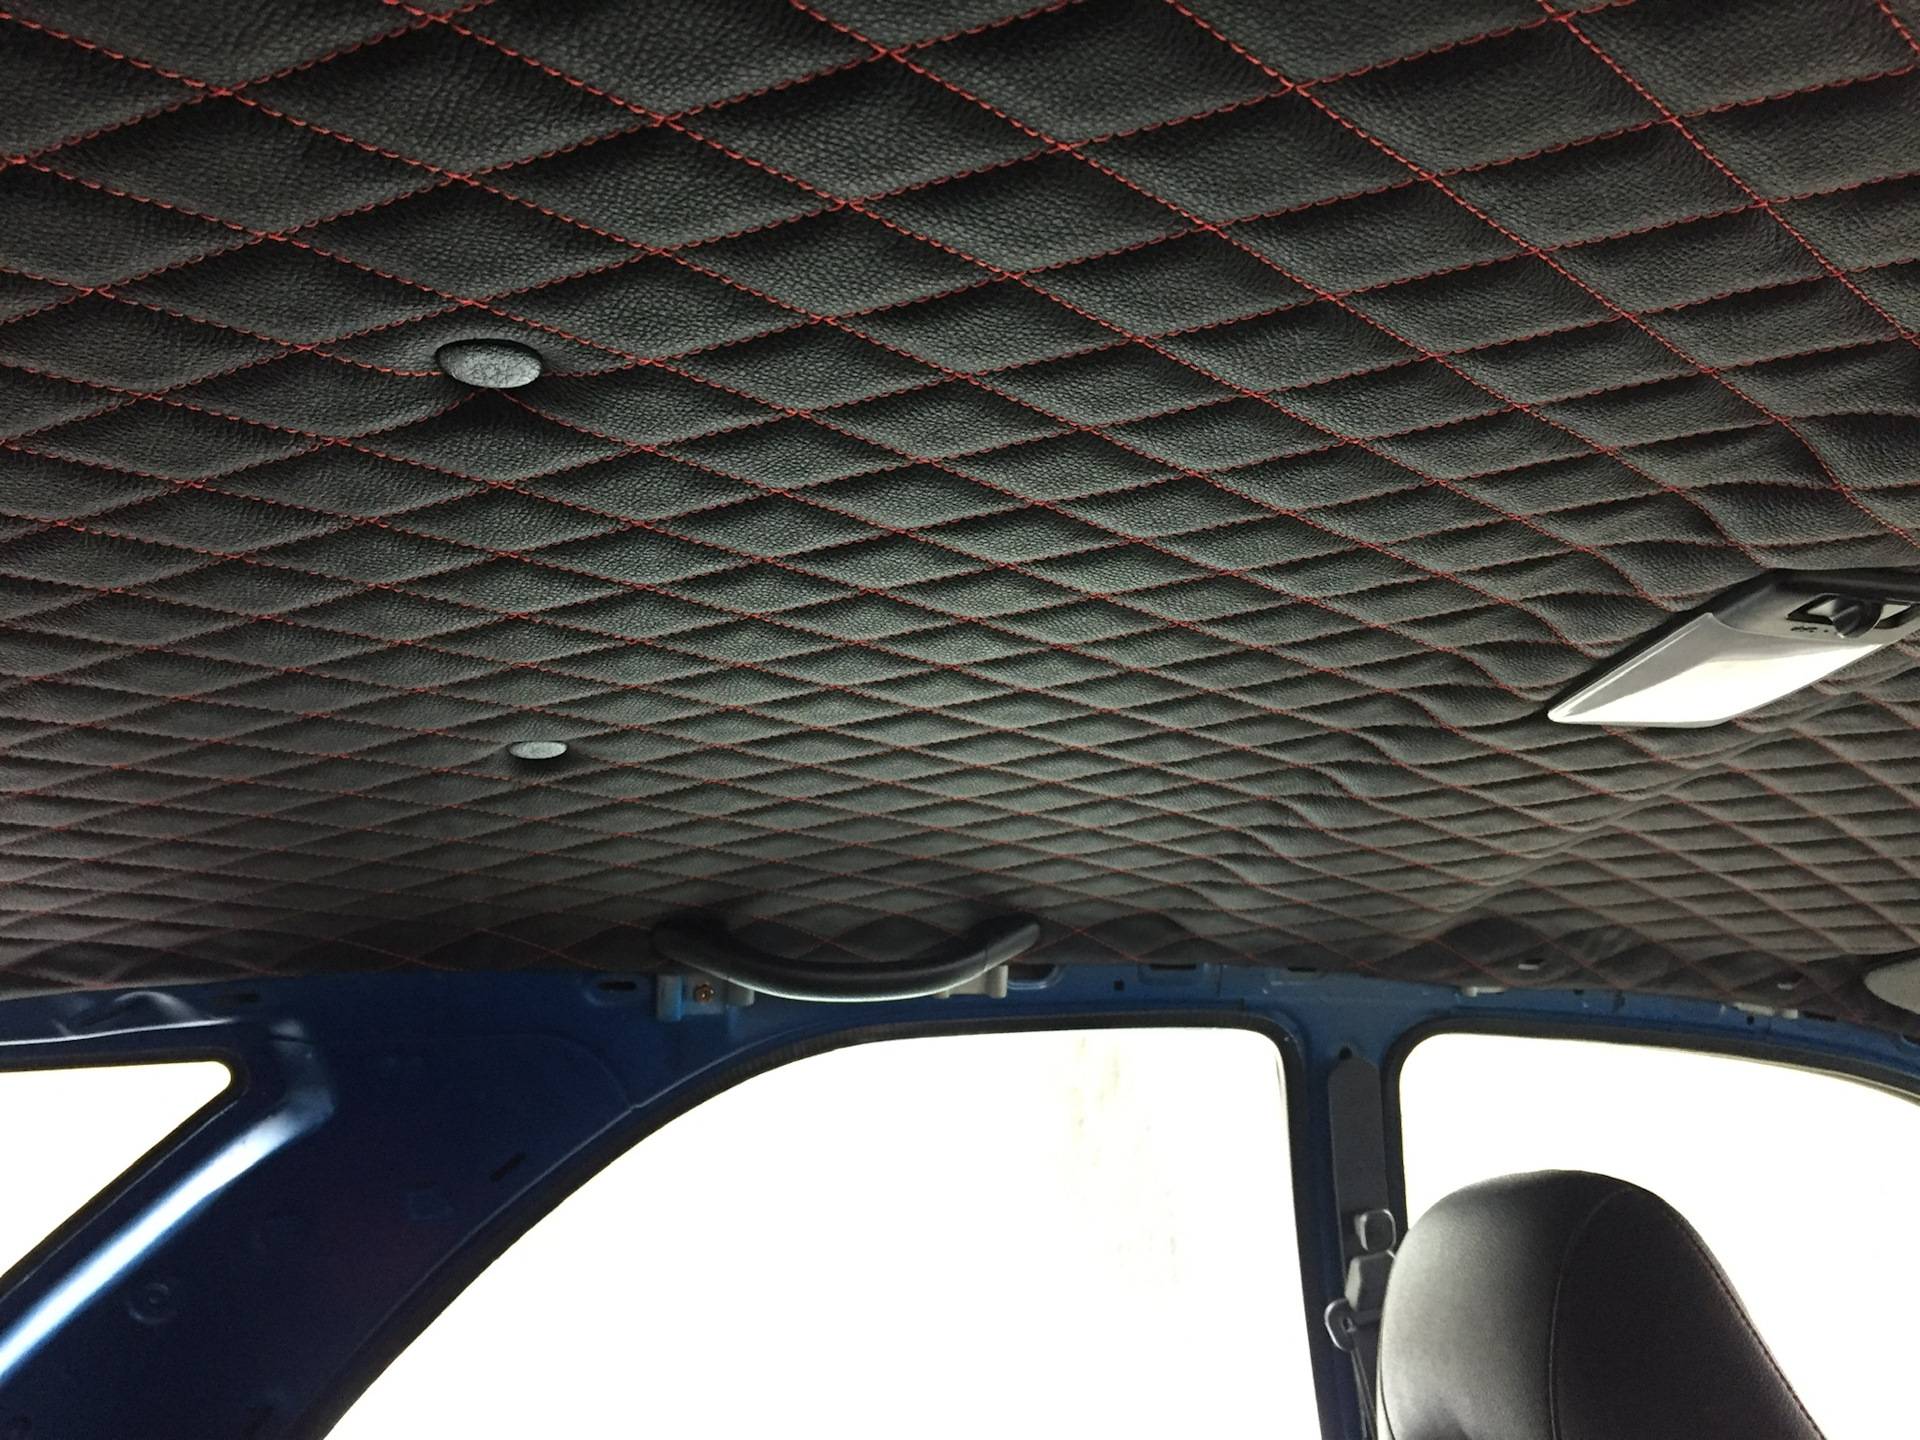 Как самостоятельно перетянуть потолок в машине